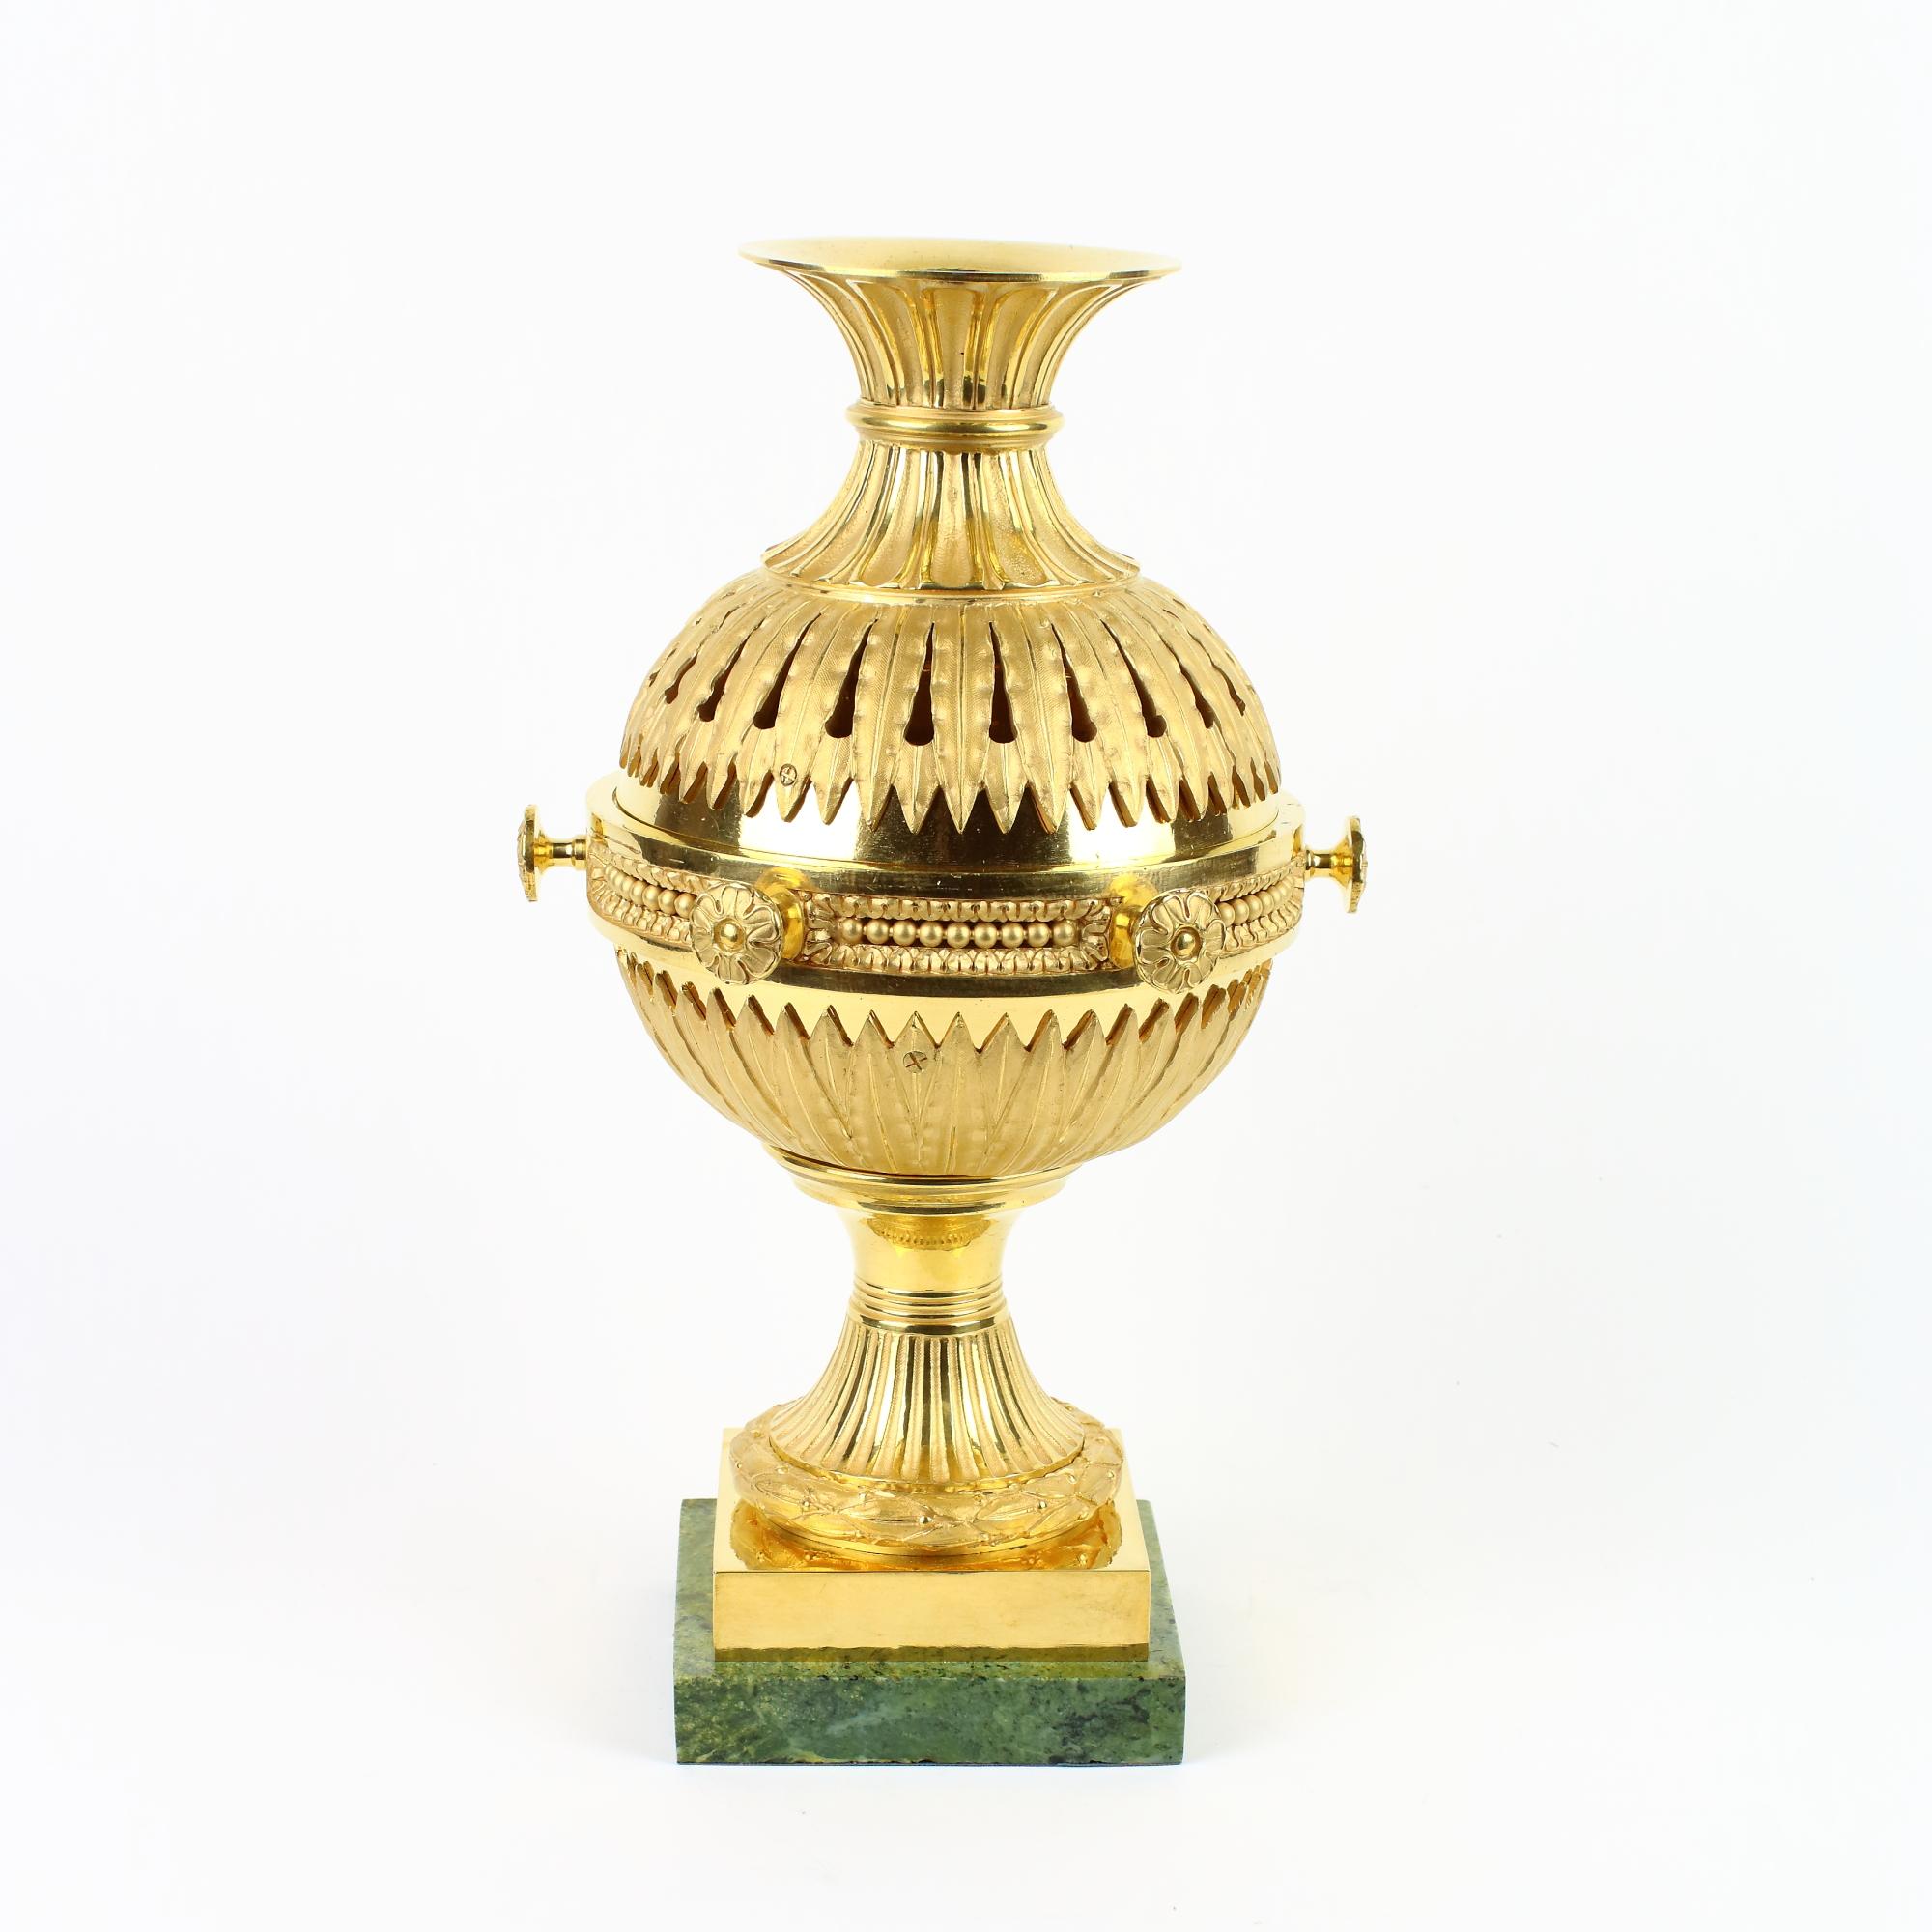 Brûle-parfum ou Brule Parfum en bronze doré de style Louis XVI, fin du XVIIIe siècle

Un pied rond et cannelé entouré d'une couronne de laurier reposant sur un socle rectangulaire en bronze doré qui est monté sur une base en métal marbré vert. Le